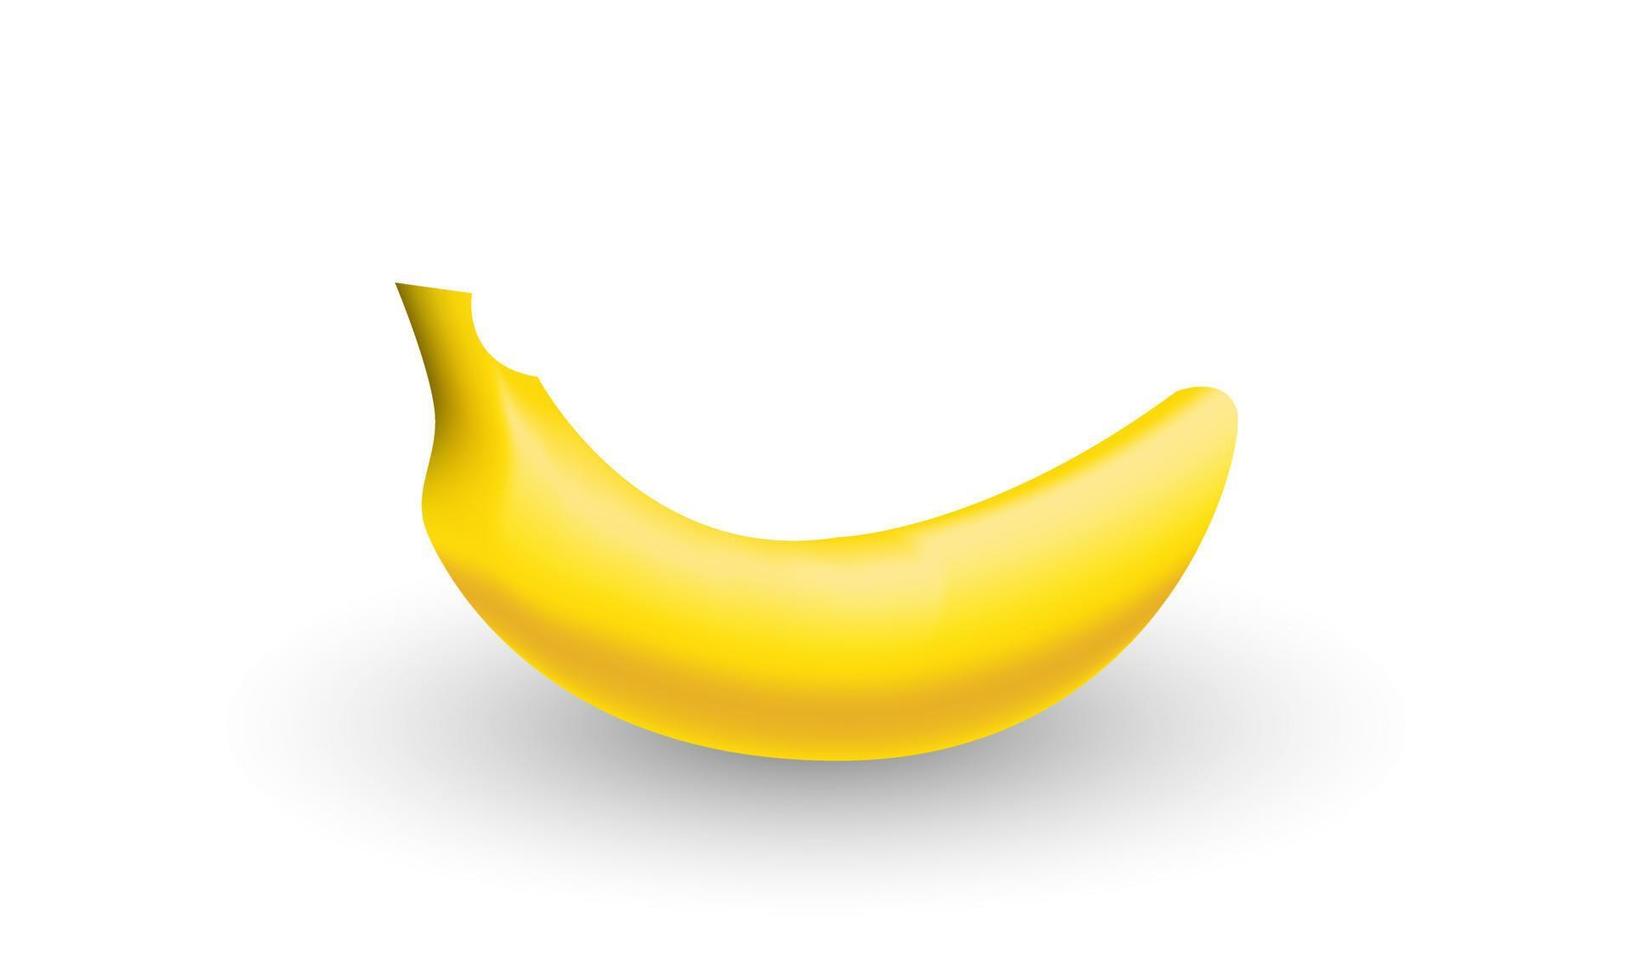 einzigartige 3d gelbe banane geschälte obst natur isoliert auf vektor